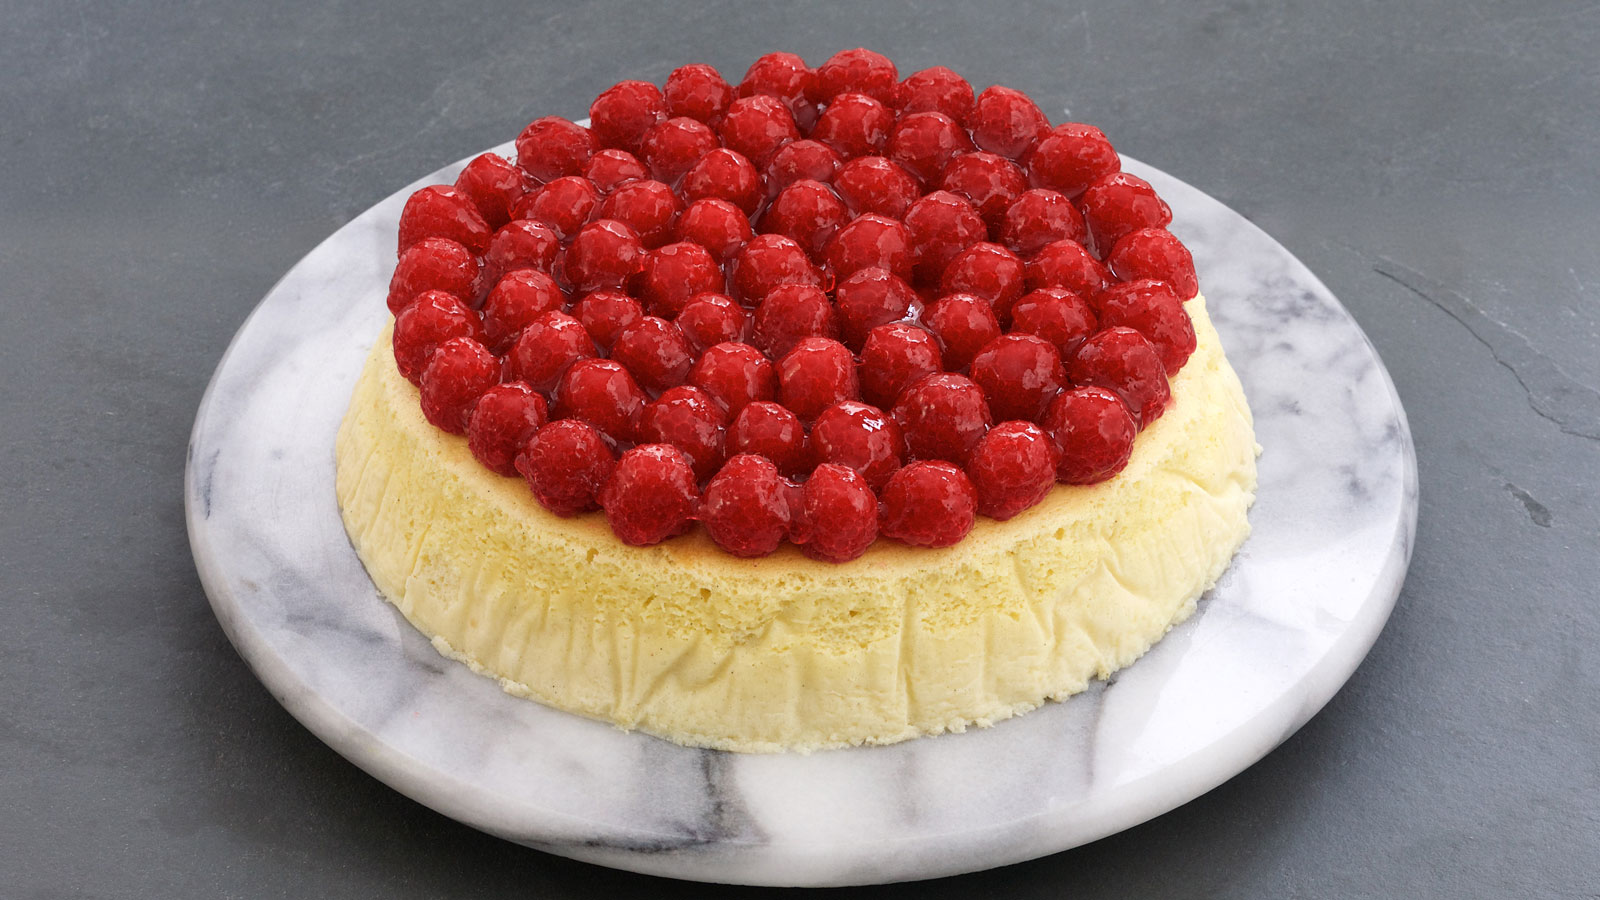 Tarta de queso esponjosa con jalea de frambuesa (Raspberry jelly fluffy  cheesecake) - Anna Olson - Receta - Canal Cocina